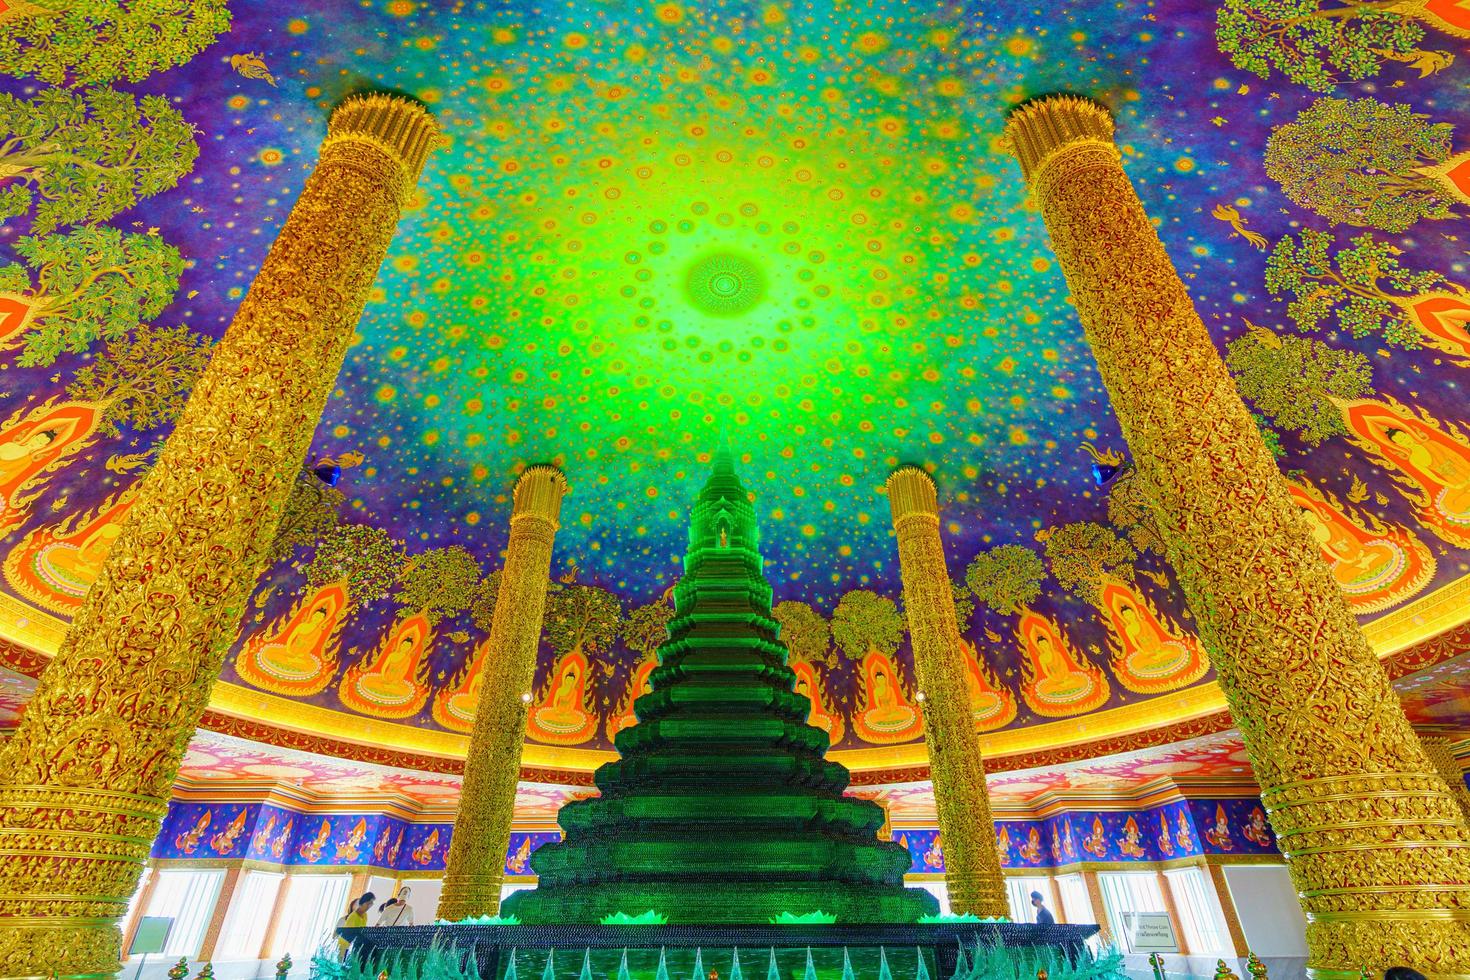 bangkok, thailandia 2020- vista interna della pagoda di colore verde all'interno di un tempio buddista foto